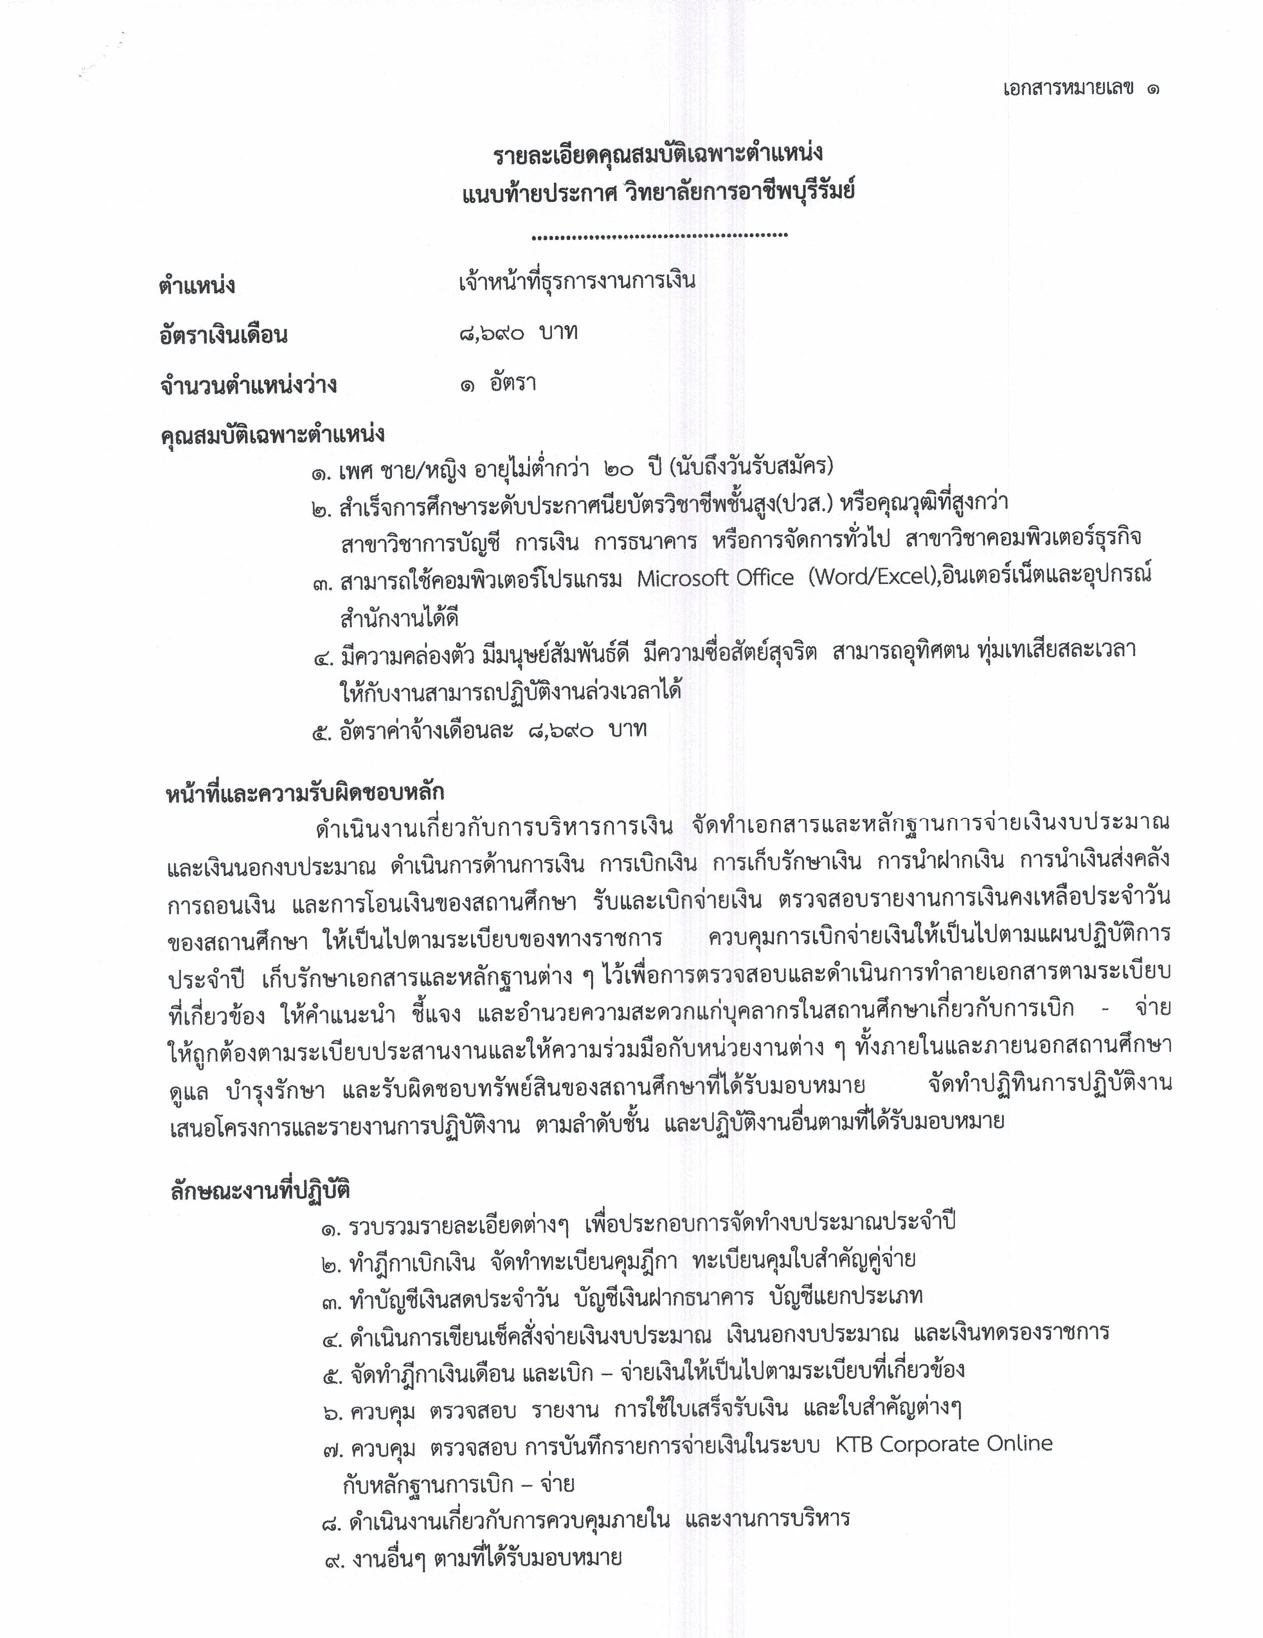 ประกาศวิทยาลัยการอาชีพบุรีรัมย์ page 0004